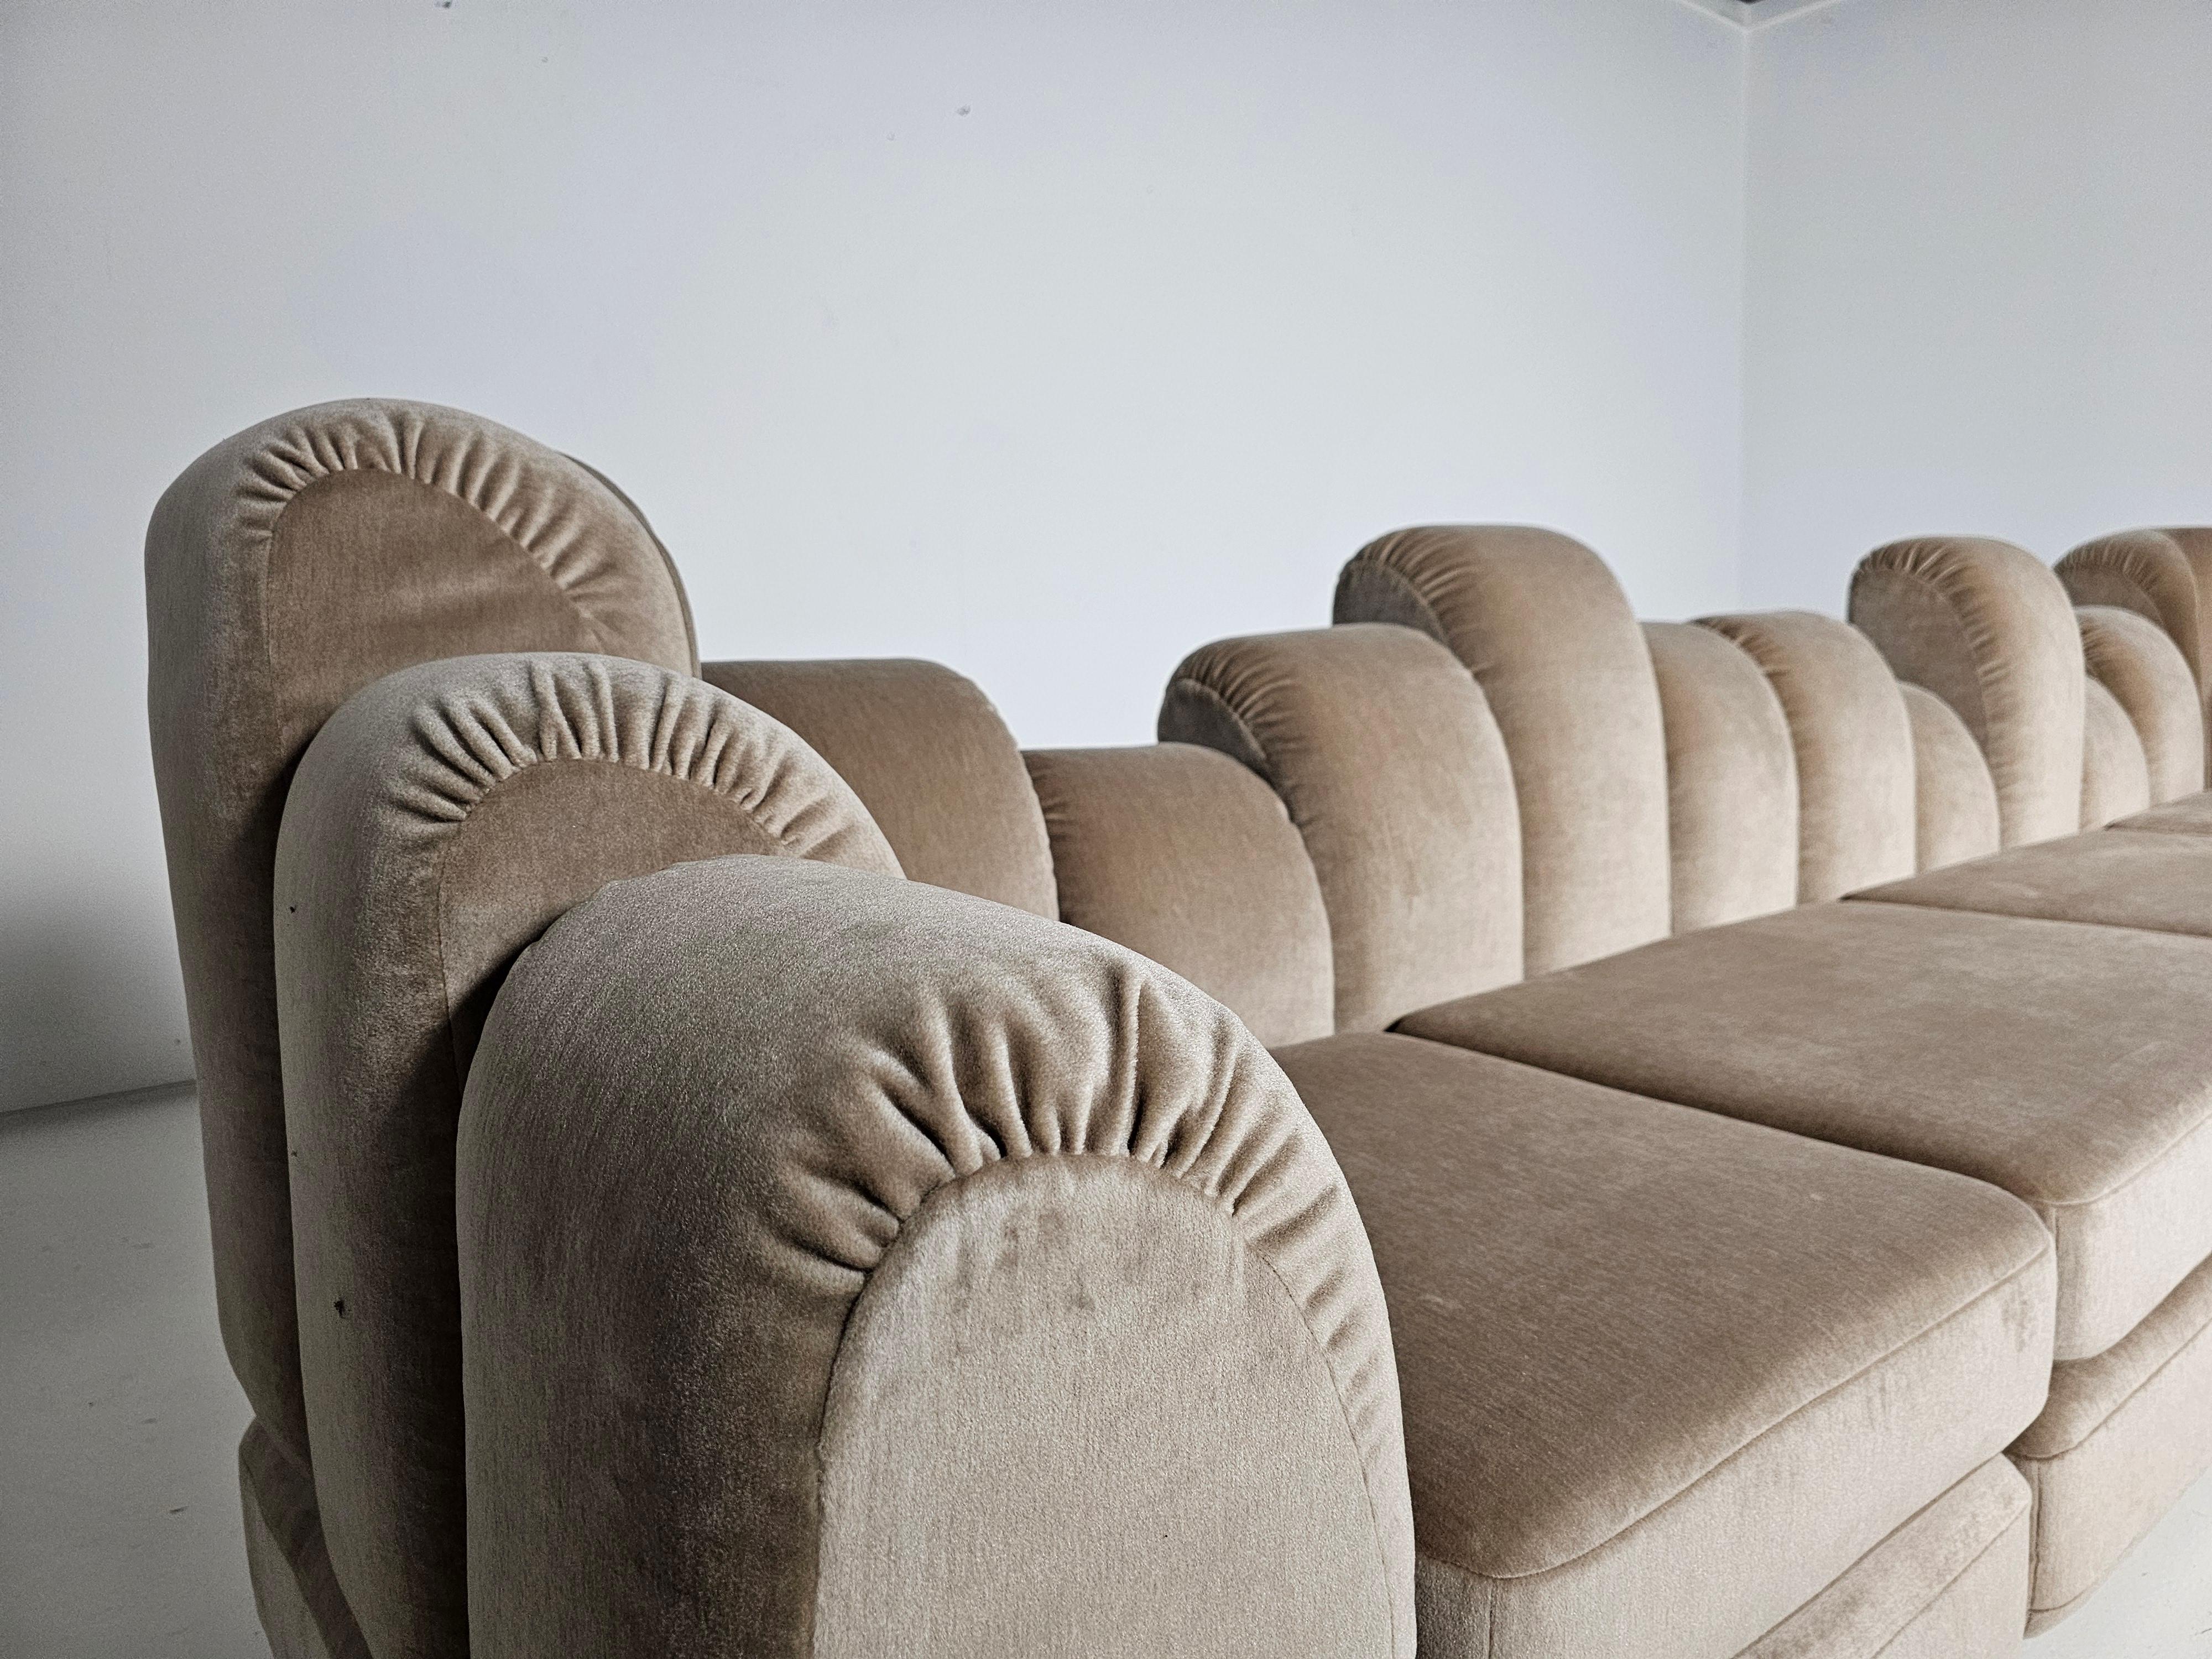 Hans Hopfer 'Dromadaire' Sectional Sofa in beige mohair velvet, Roche Bobois For Sale 7